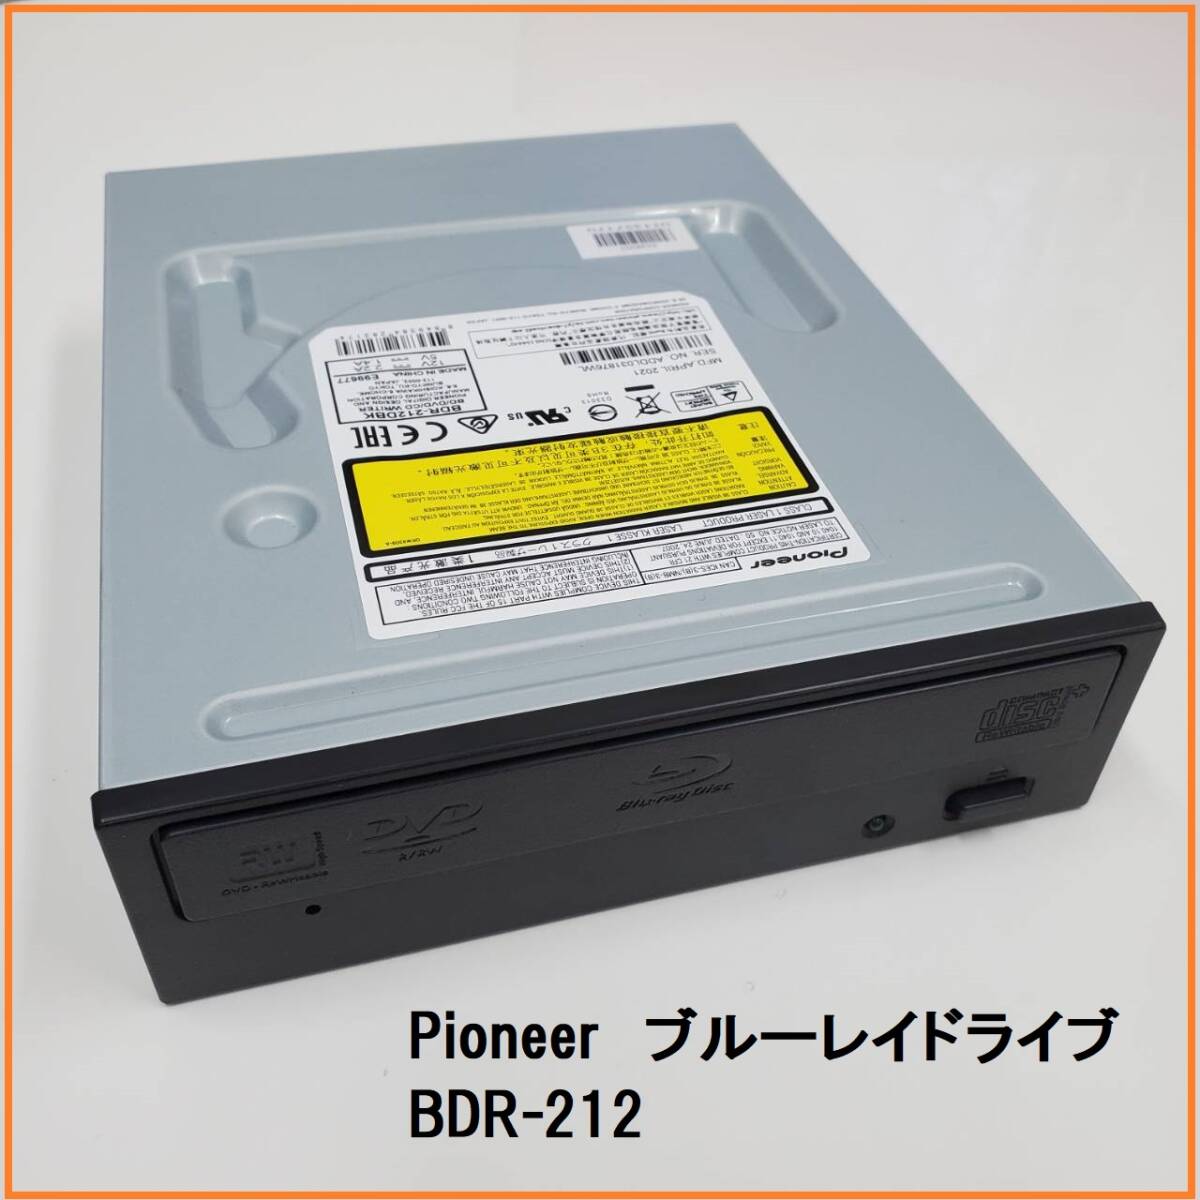 パイオニア 2021年4月製造 BDR-212 ブルーレイドライブ SATA デスクトップ 5インチ Pioneer Blu-ray DVDの画像1